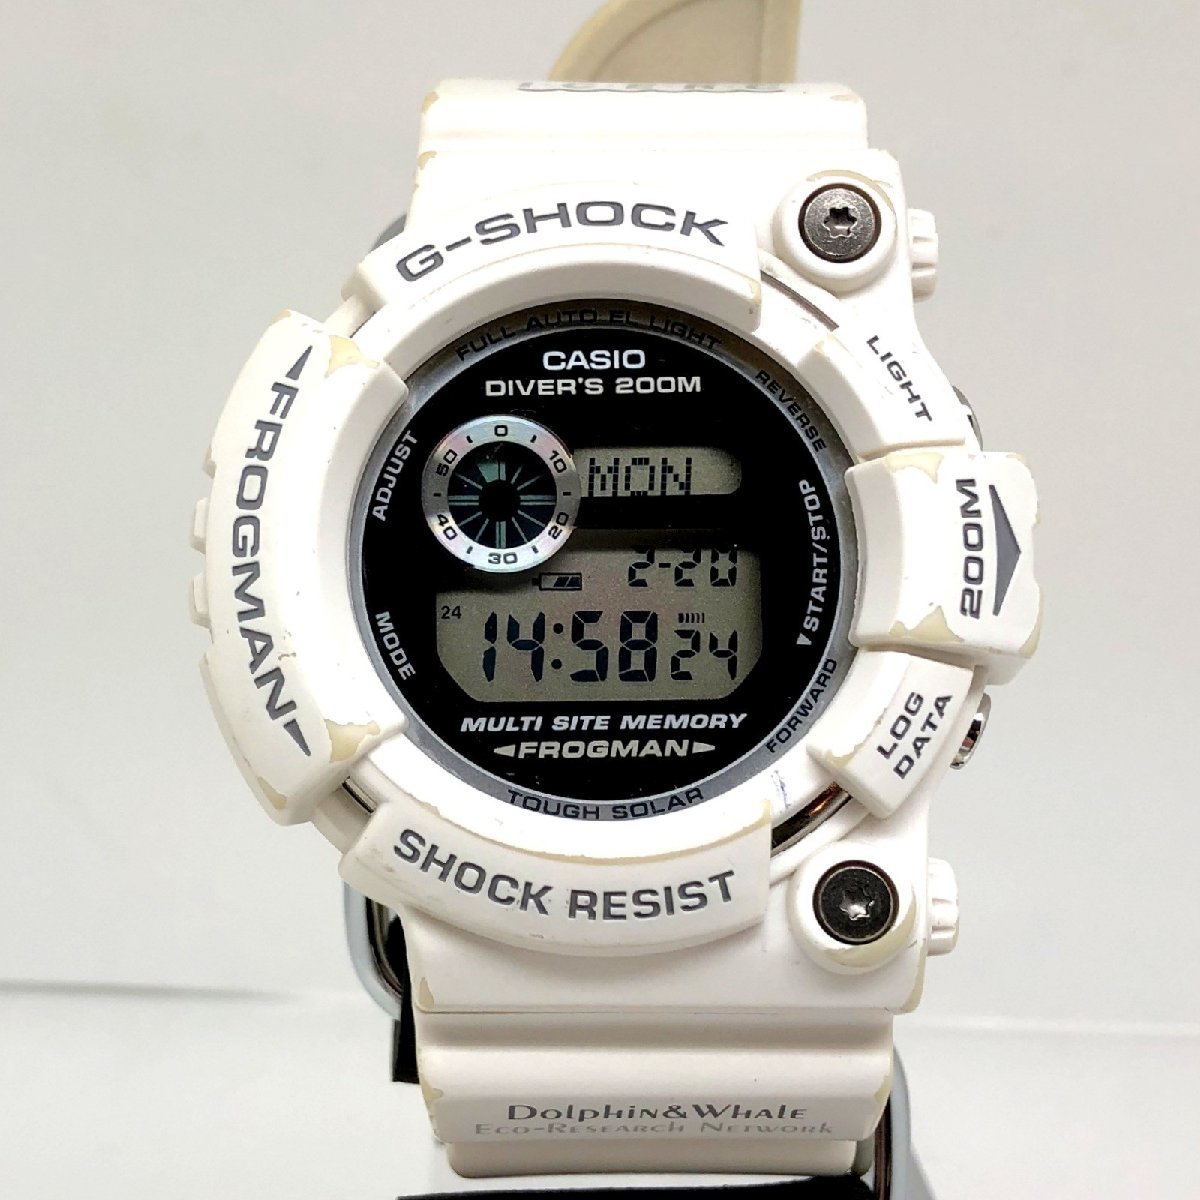 カシオ　G-SHOCK イルクジ電波ソーラー新品未使用品 腕時計(デジタル) 超歓迎された